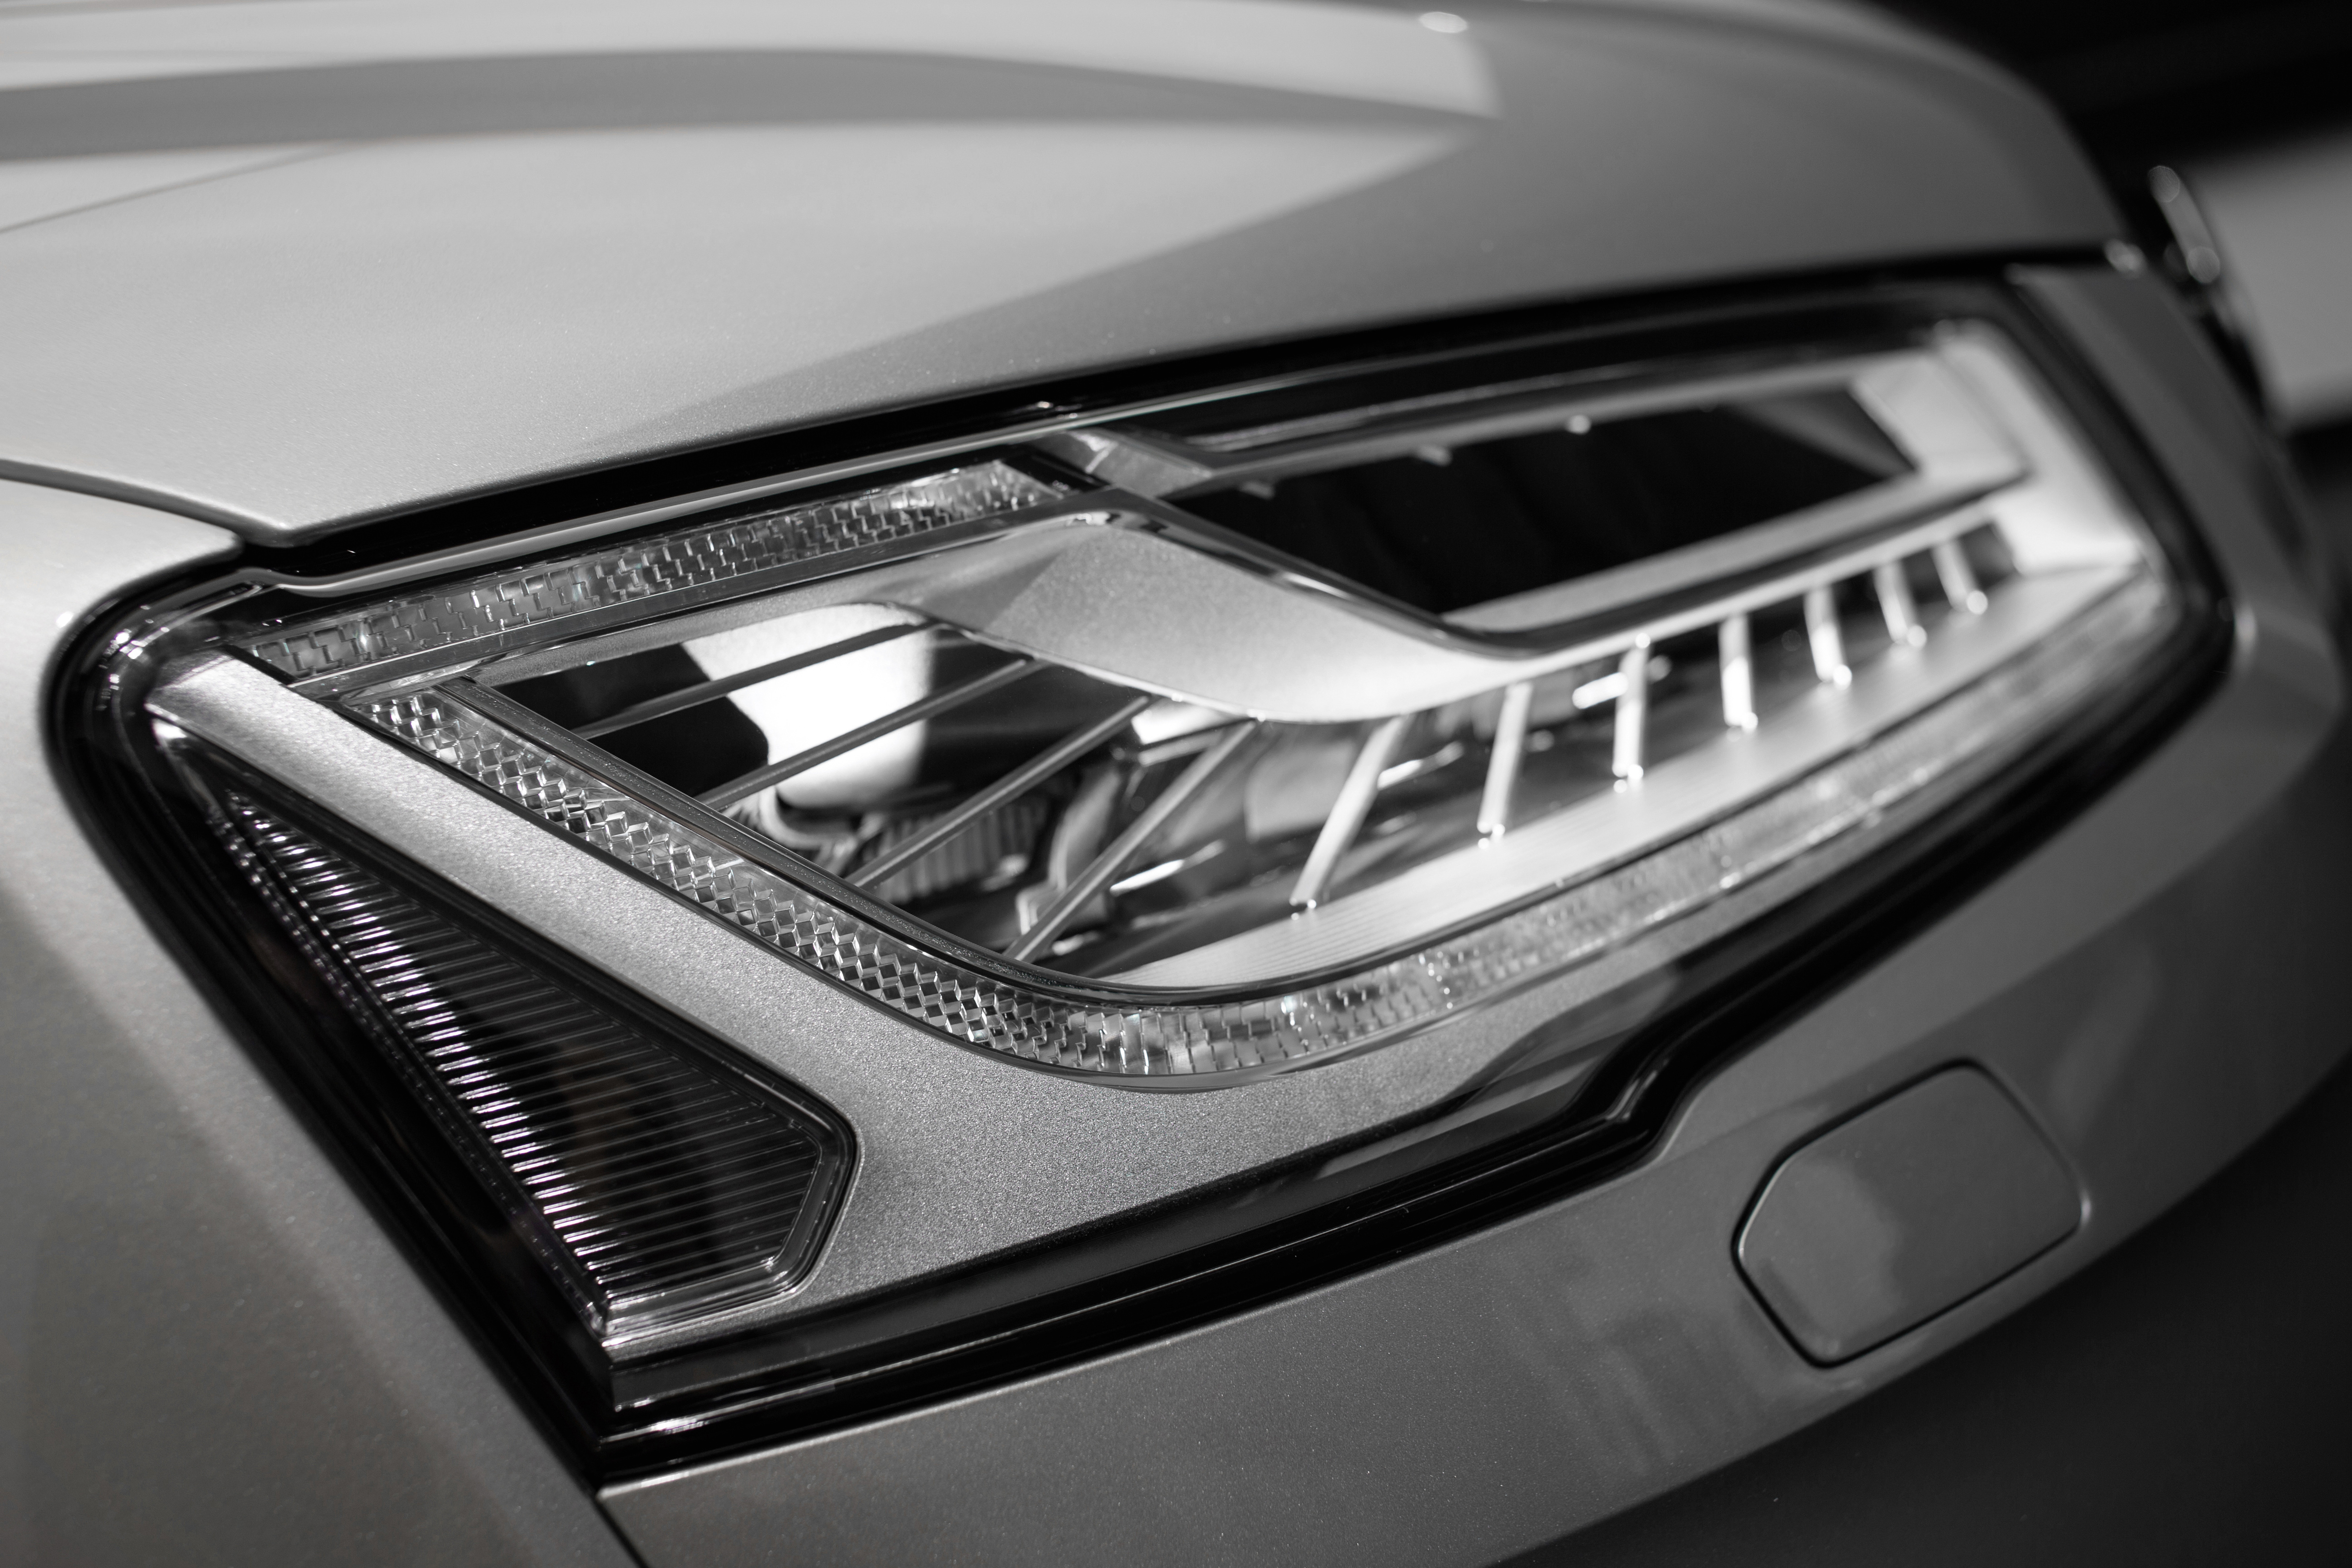 Matrix LED de carretera láser, último en tecnología de iluminación de Audi | Audi MediaServices España